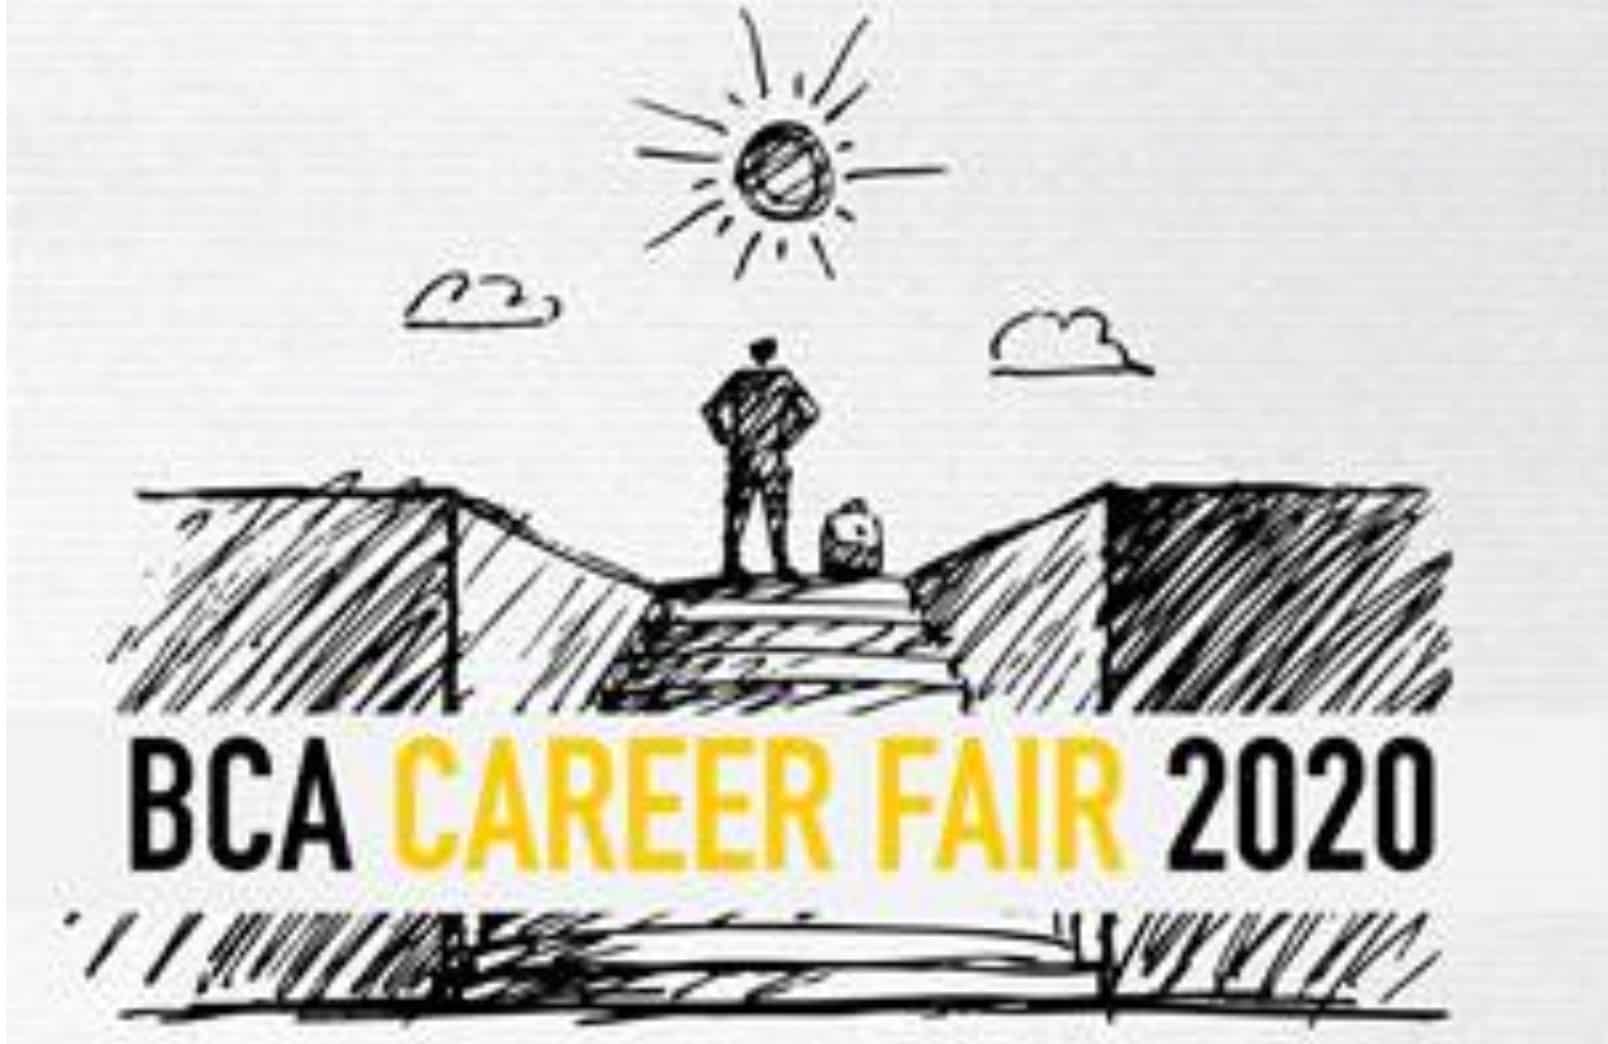 BCA Career Fair 2020